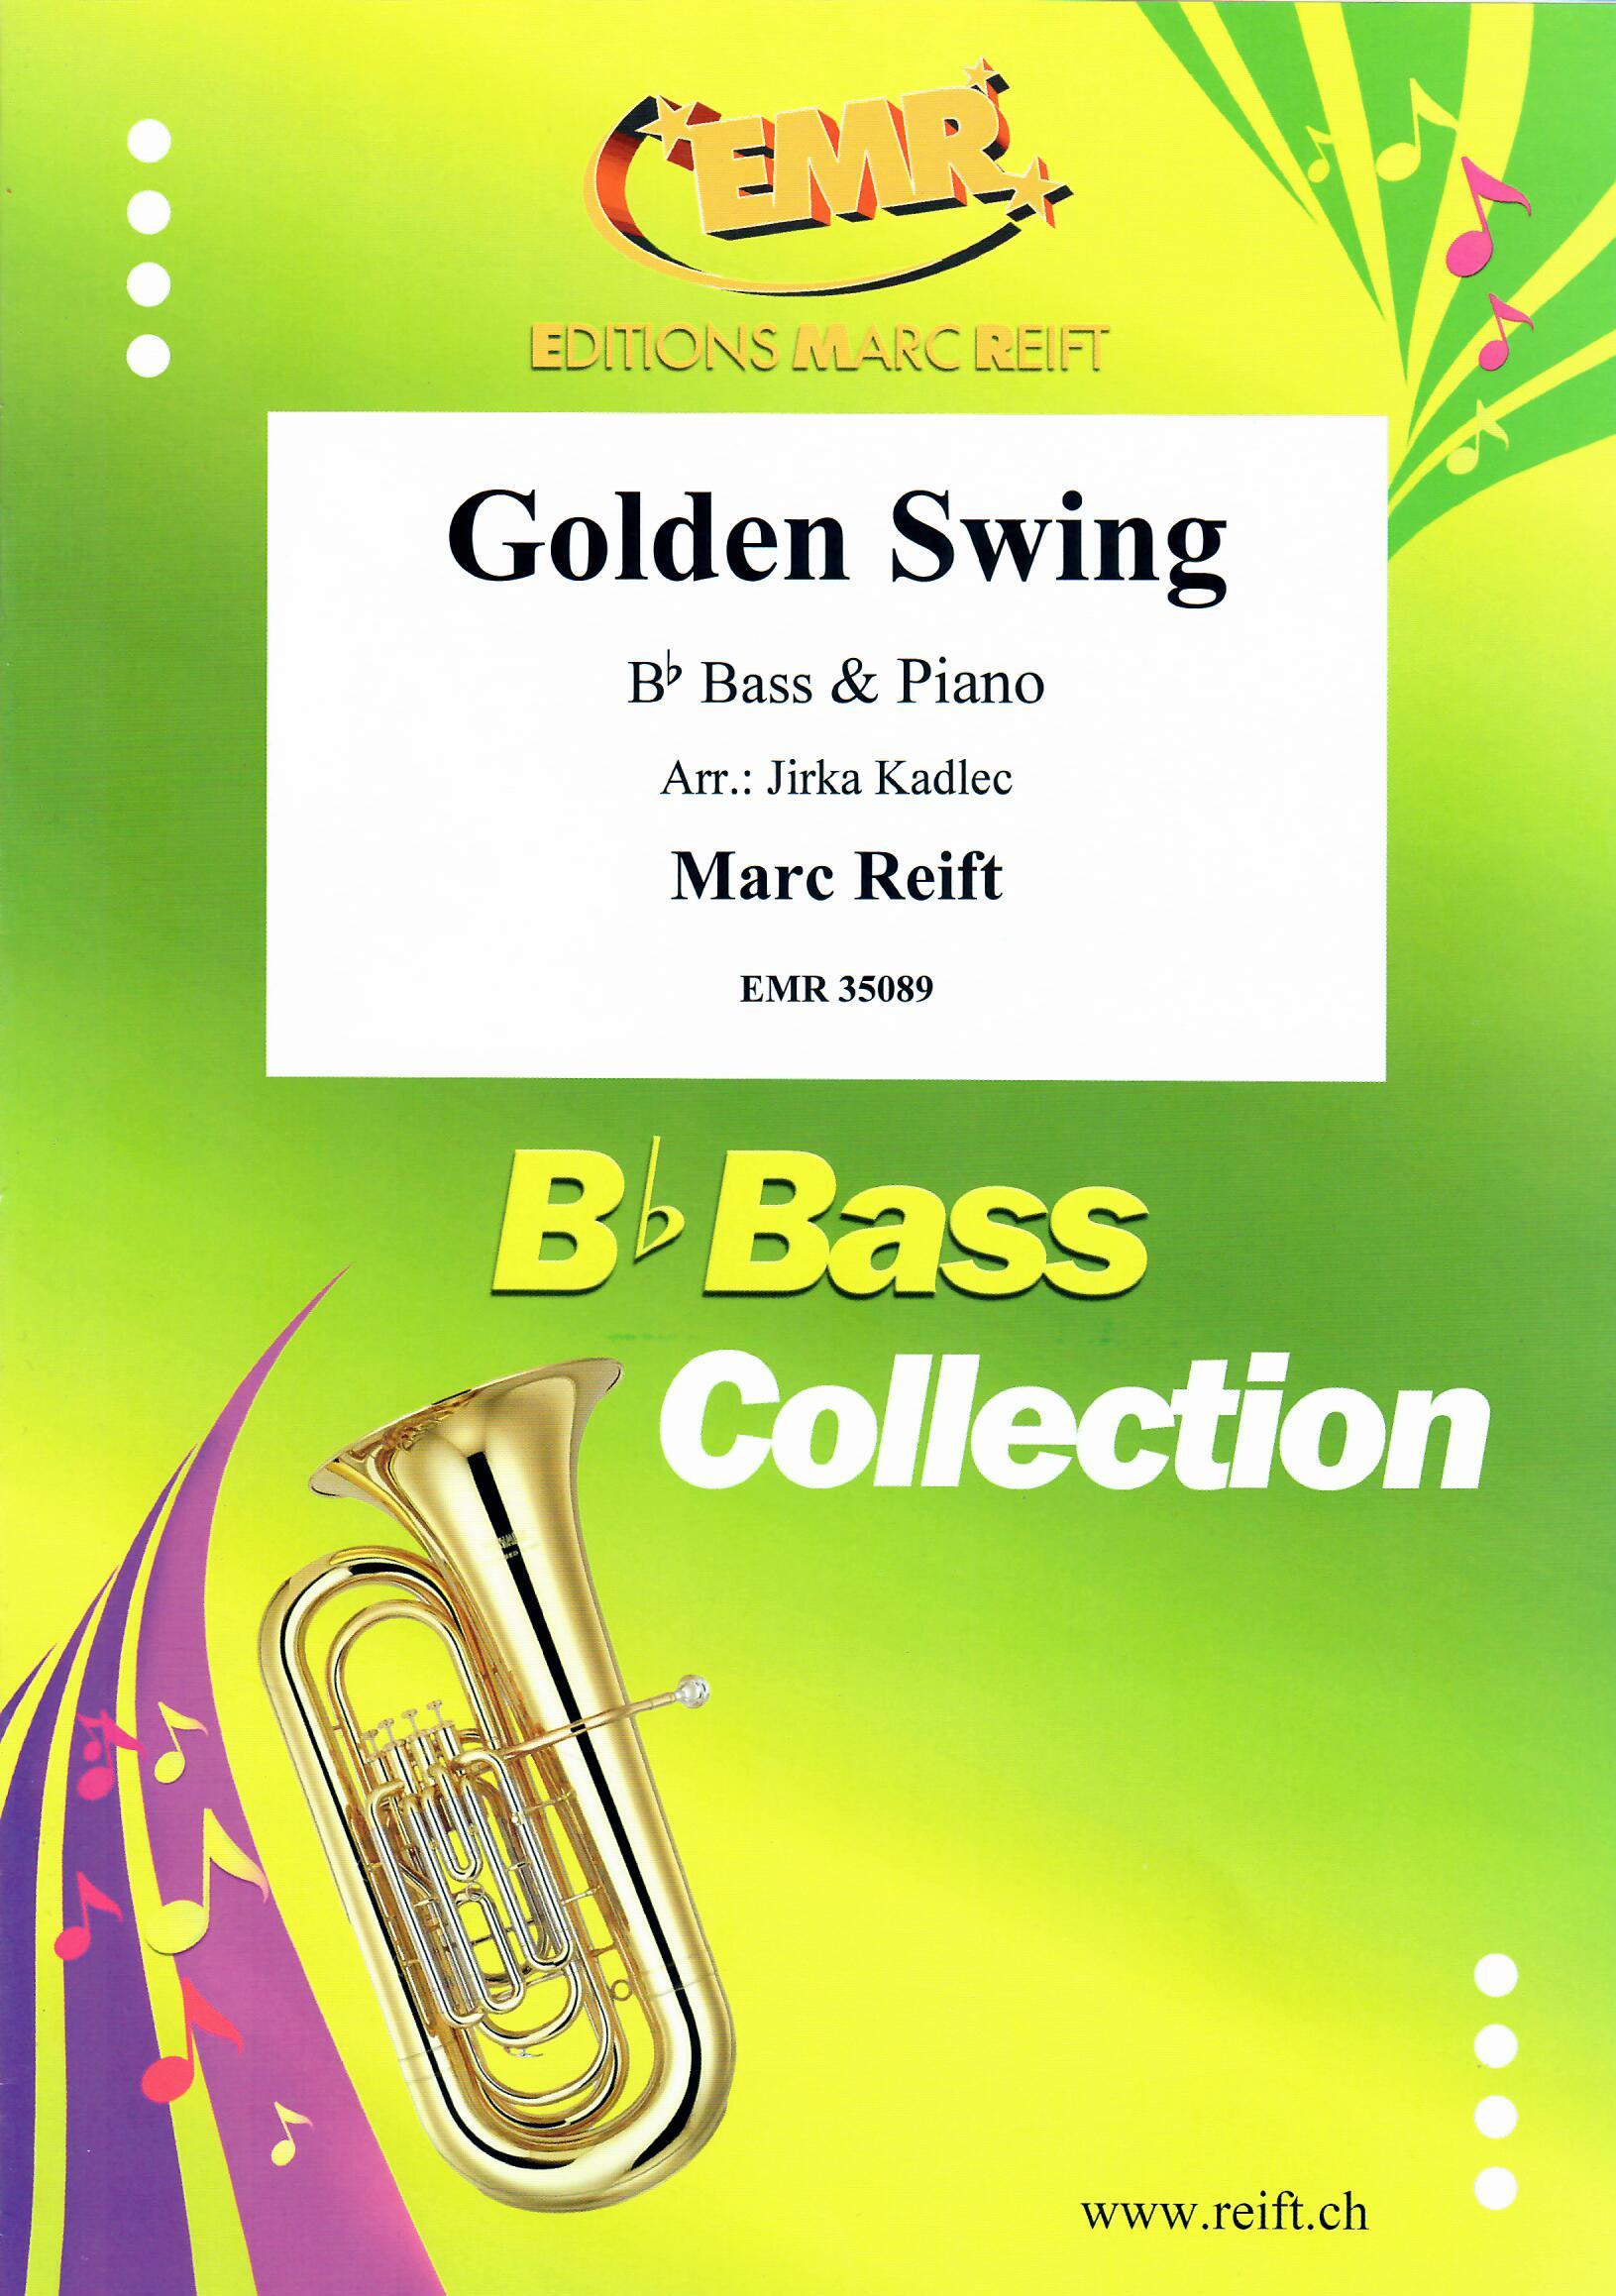 GOLDEN SWING, SOLOS - E♭. Bass